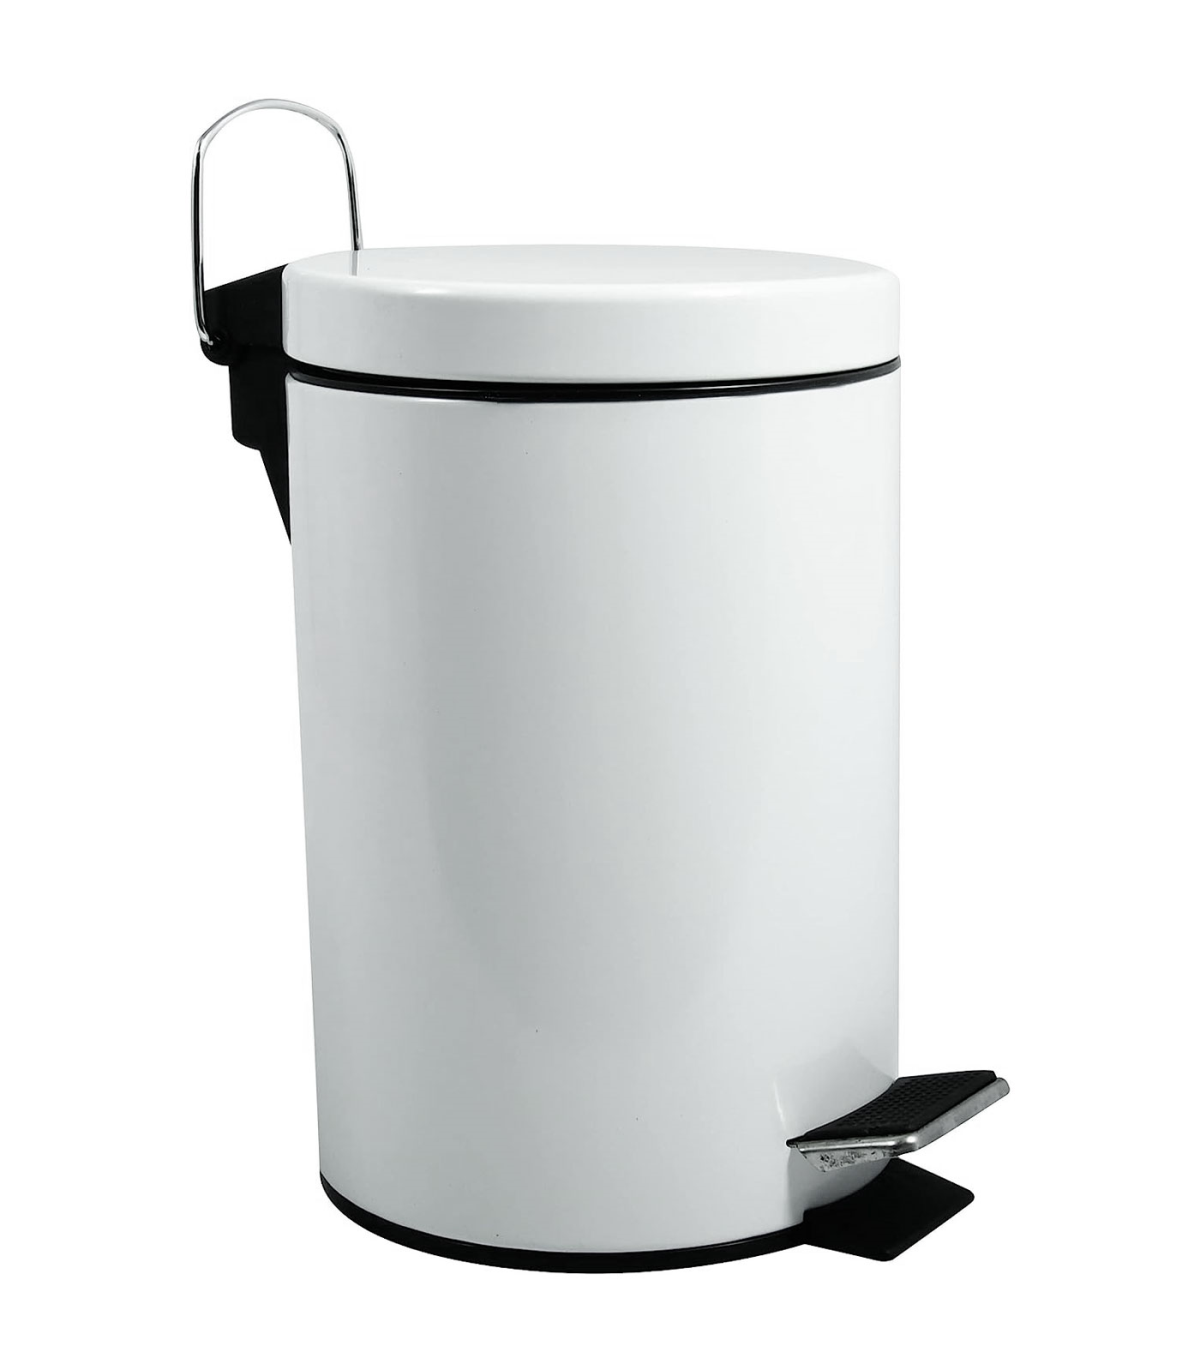  YAYA2021-SHOP Basura cuadrada en forma de tambor con pedal de  pie de desaceleración para el hogar, papelera de acero inoxidable con tapa  para cocina, oficina, papelera casera (tamaño 12L) : Hogar